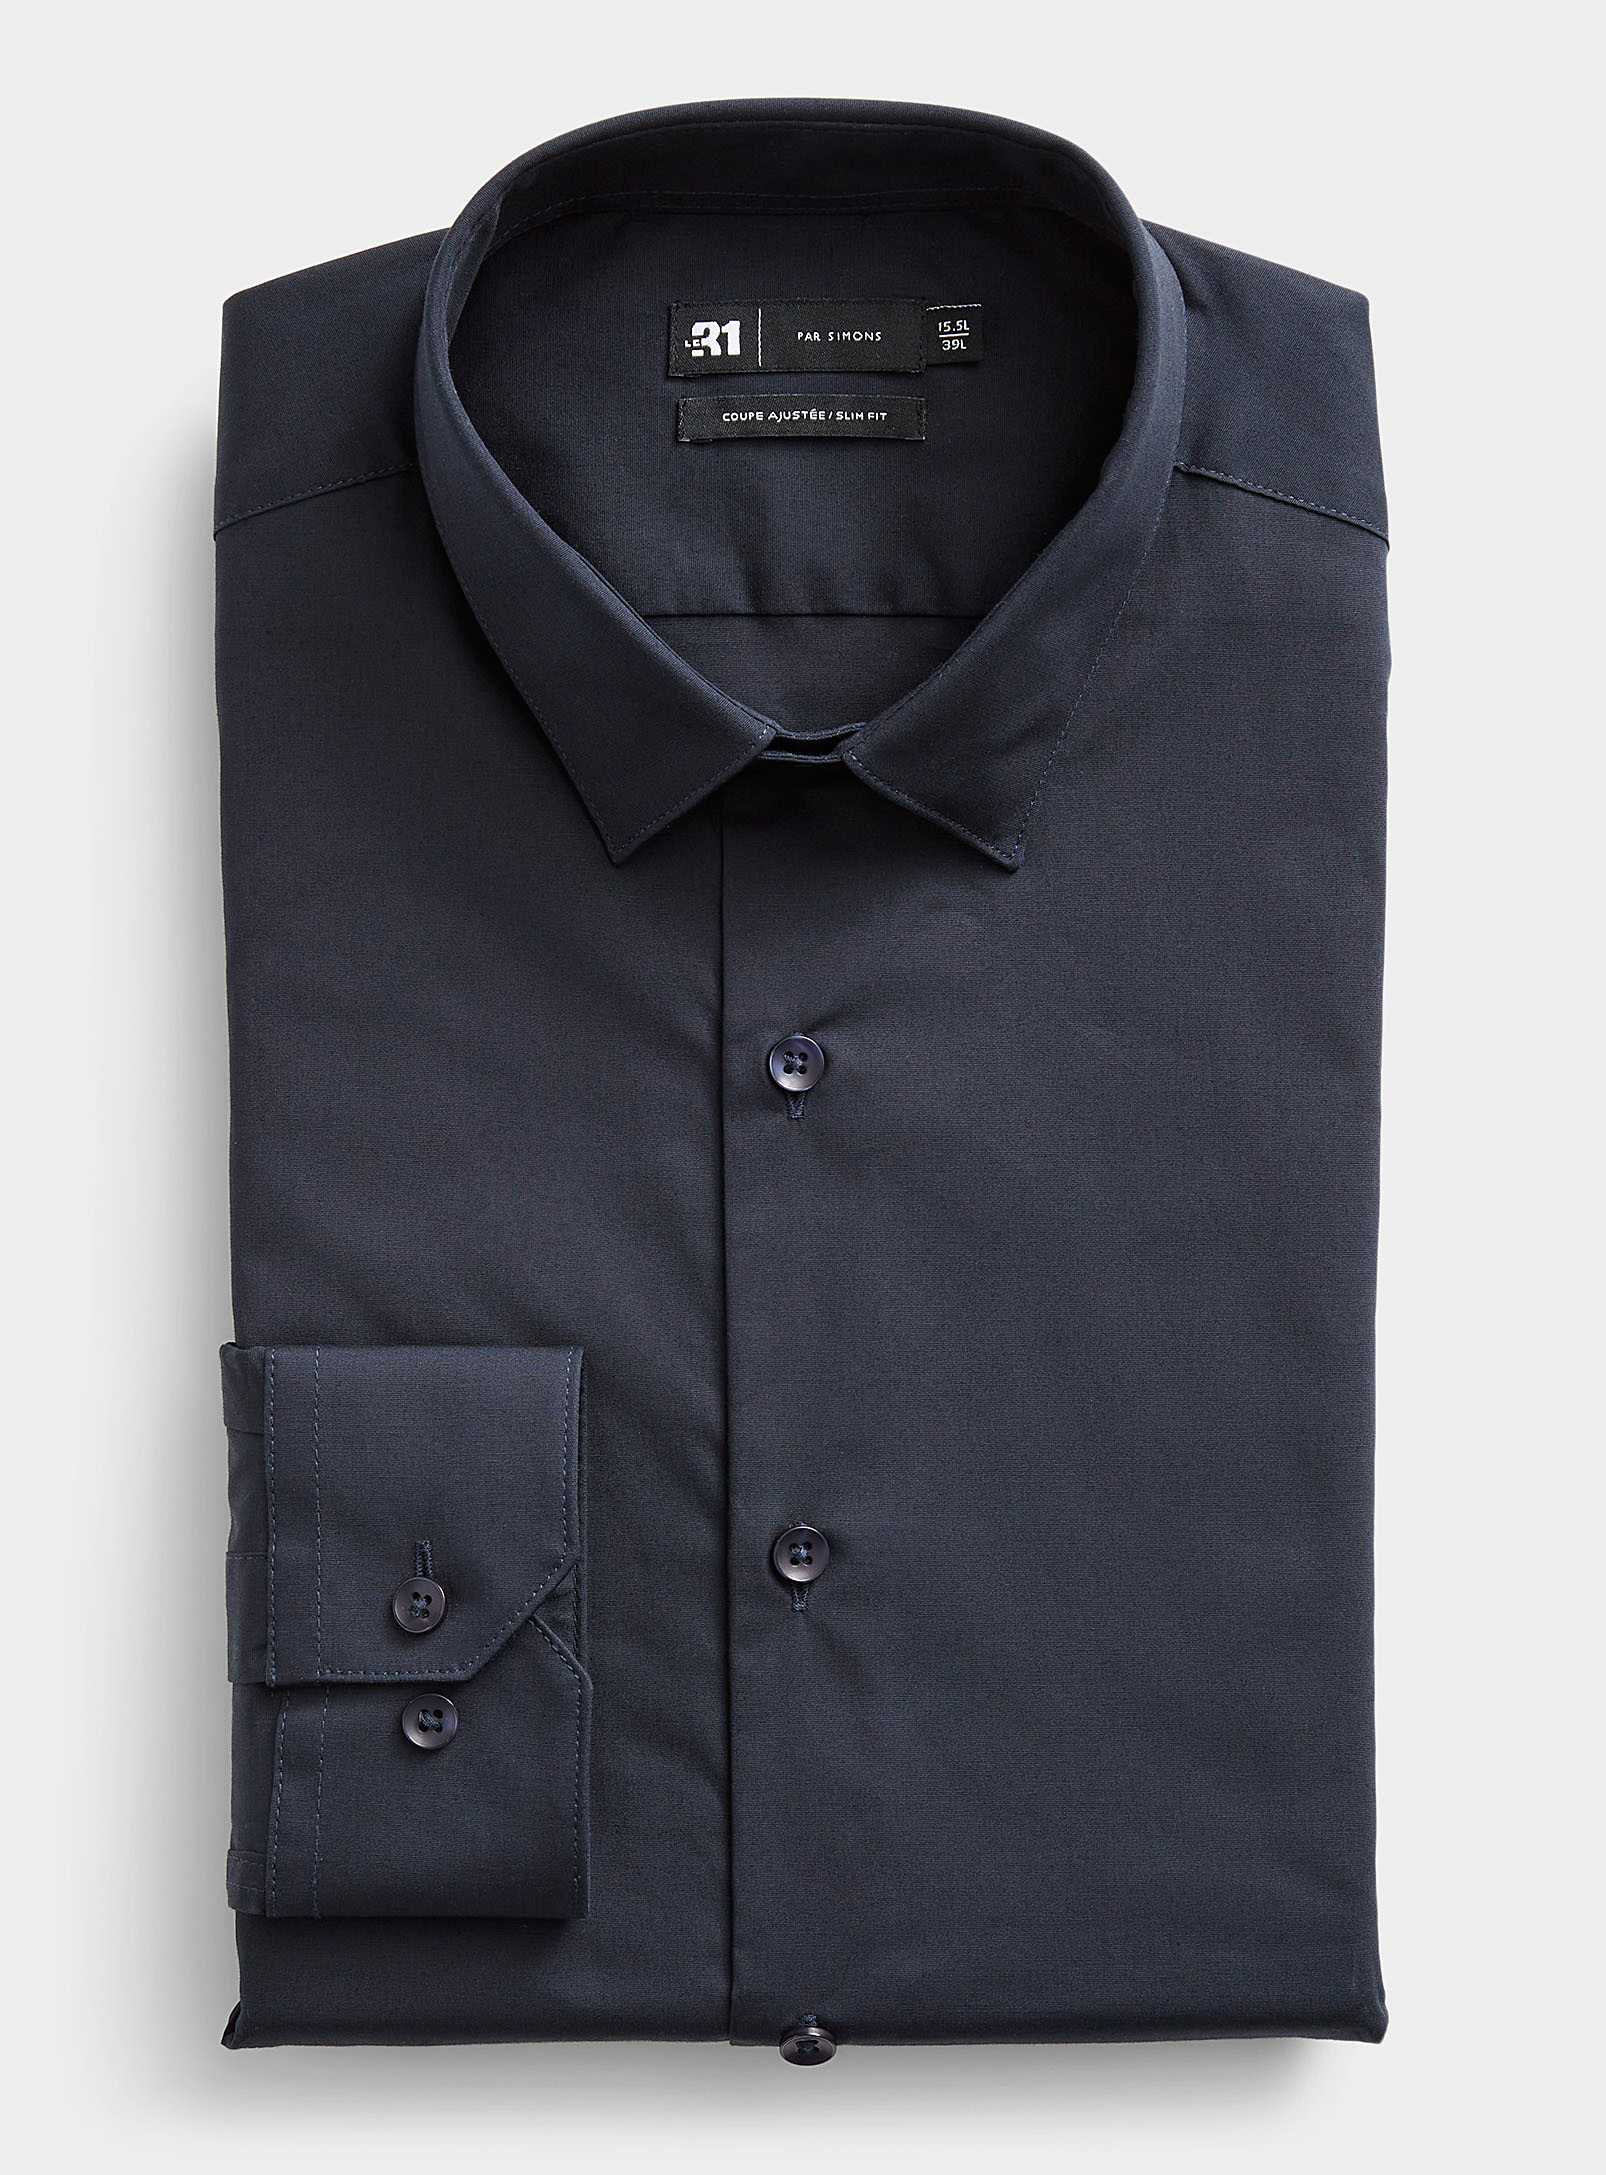 Le 31 Minimalist Stretch Shirt Slim Fit In Marine Blue